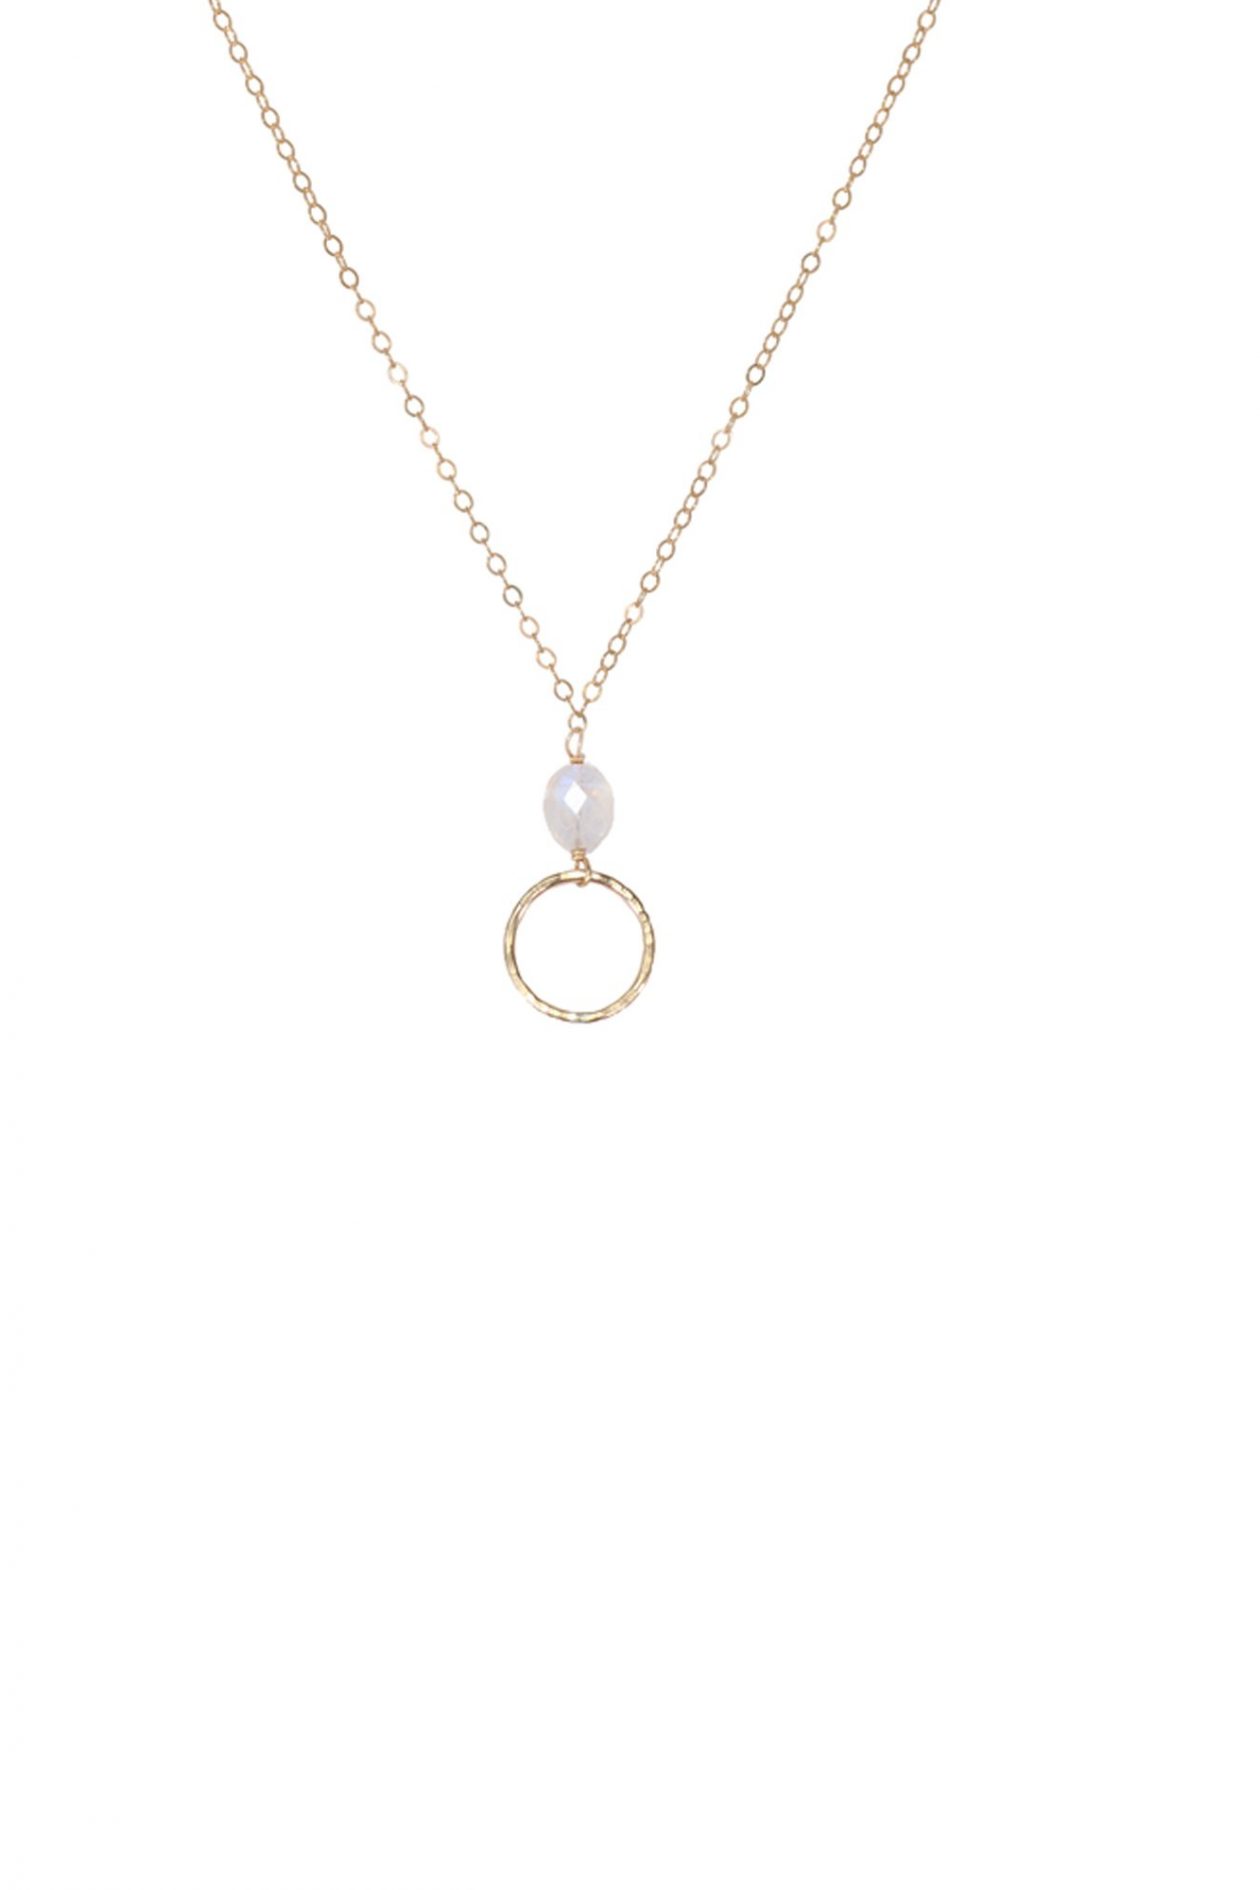 JK Designs Oval Gemstone Necklace